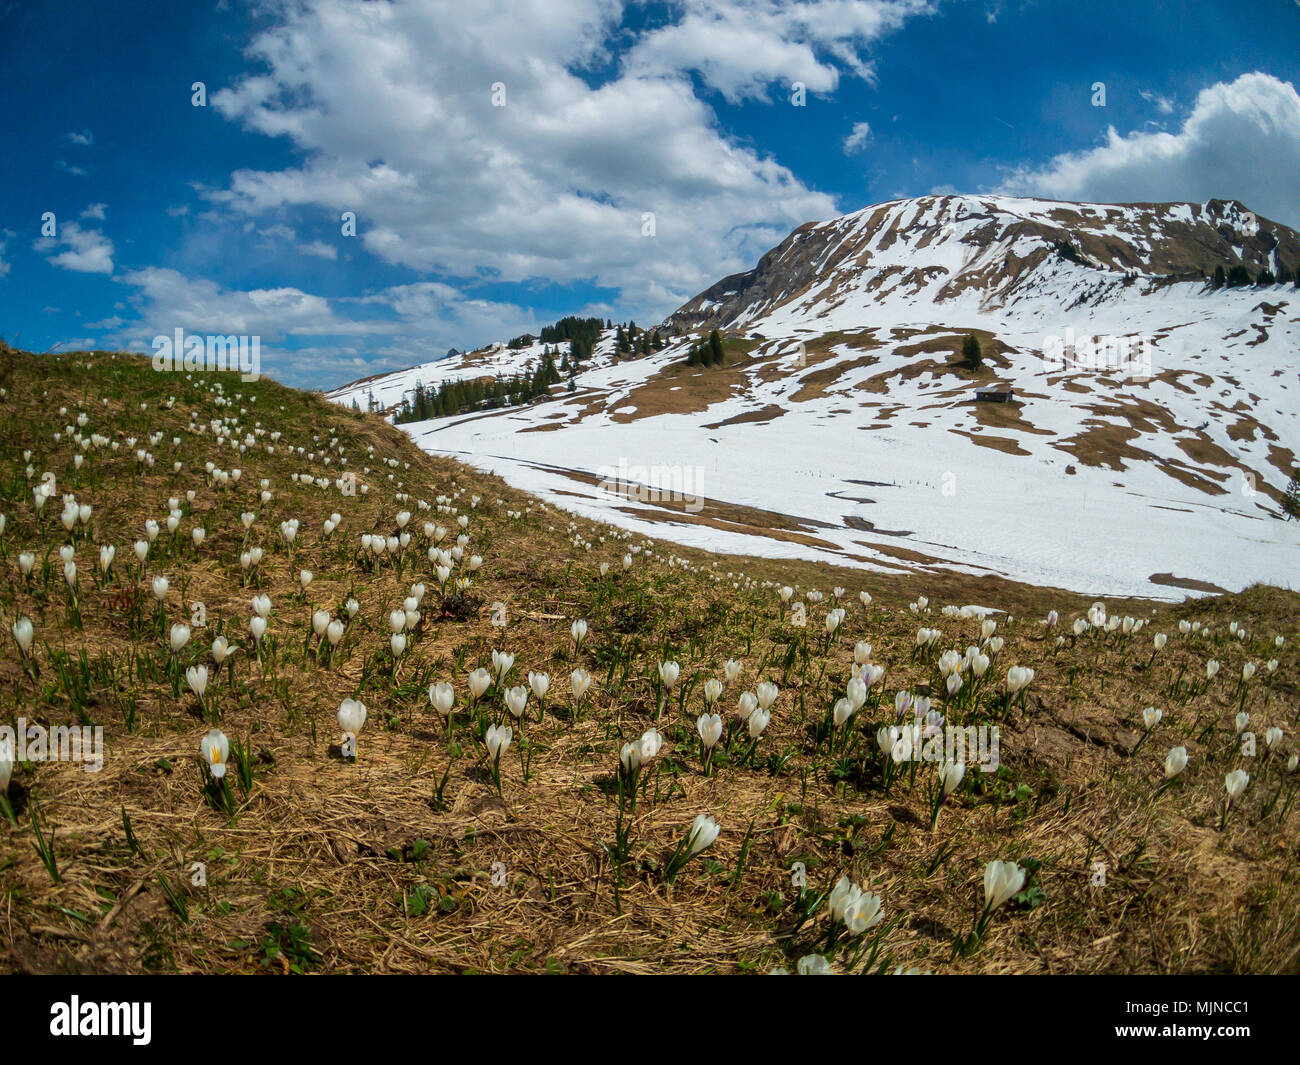 Schöne Schweiz berge Landschaft mit blühenden Krokusse Blumen  Stockfotografie - Alamy